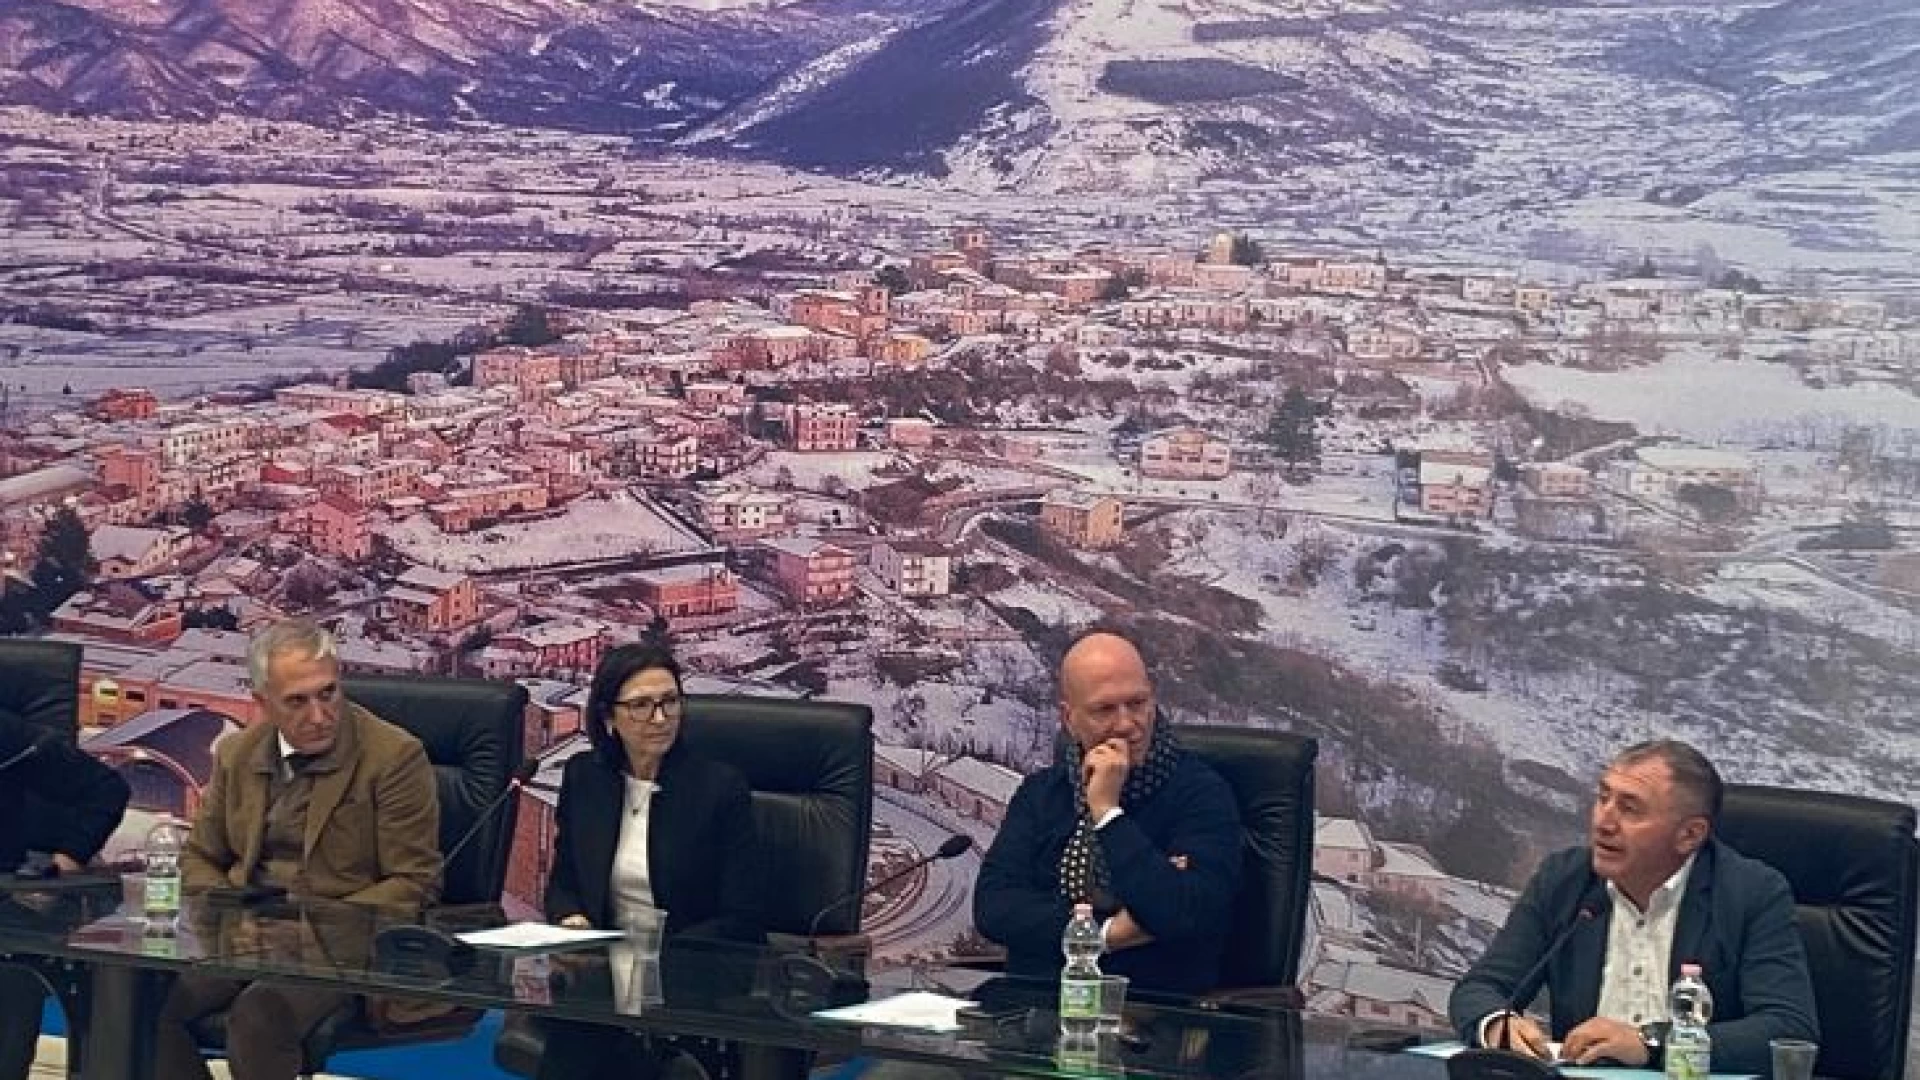 Provincia dell’Aquila: sottoscritto accordo quadro per la realizzazione di un presidio rurale nazionale dei Vigili del Fuoco a Montereale.